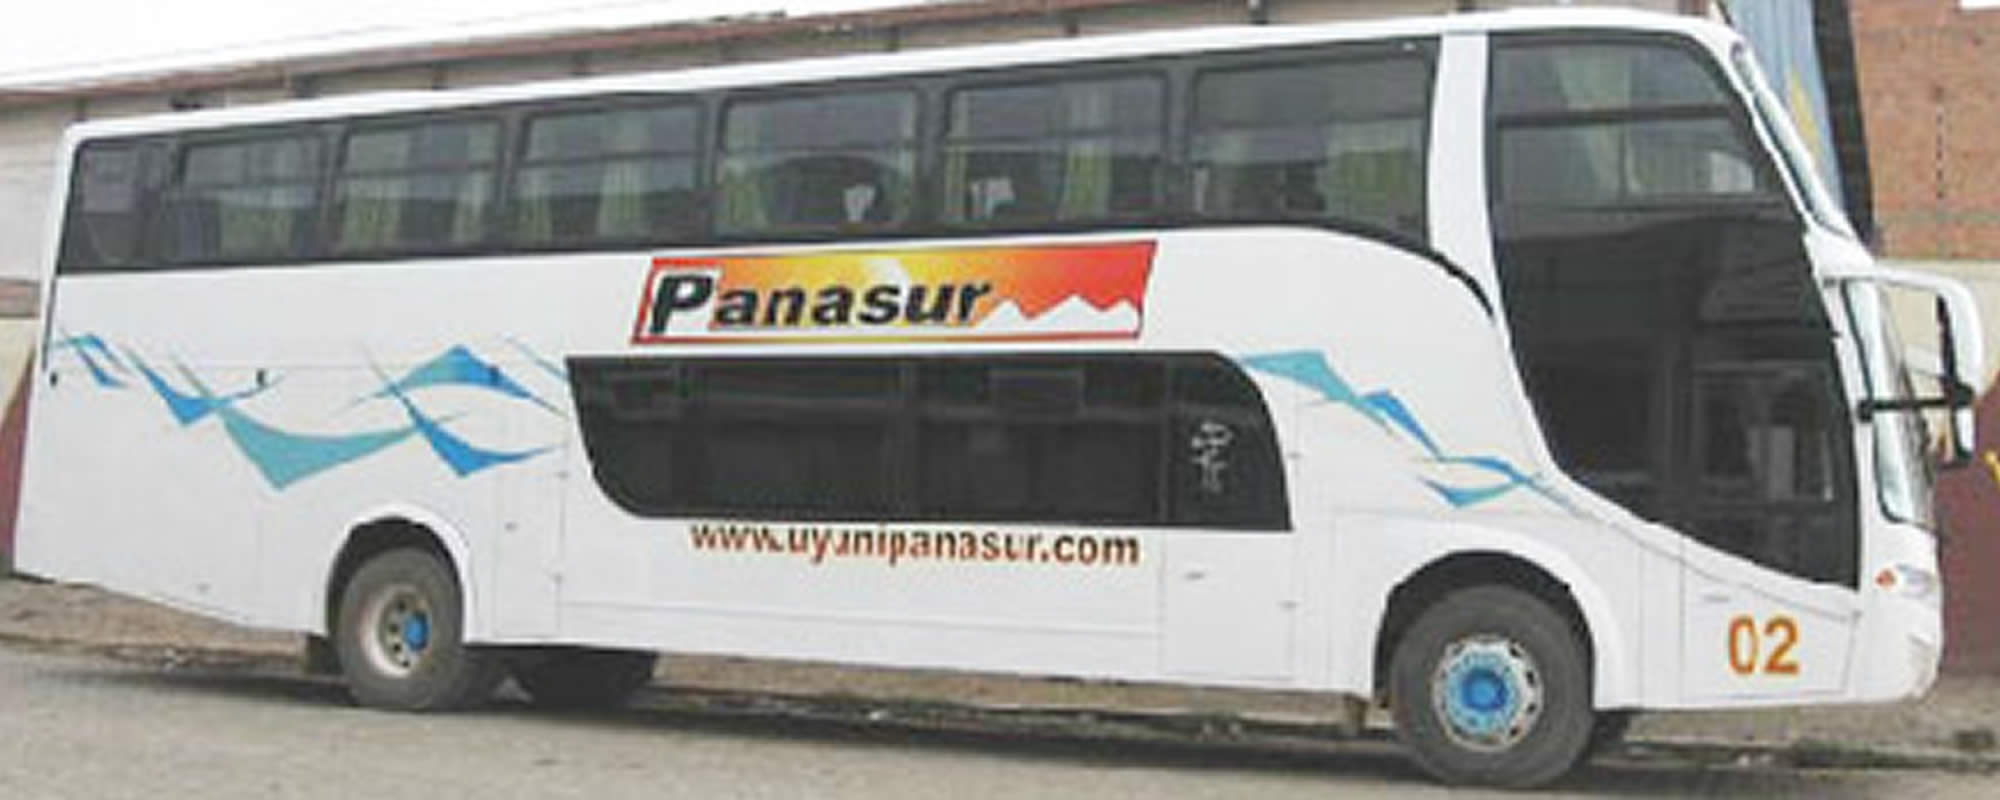 Panasur Bus